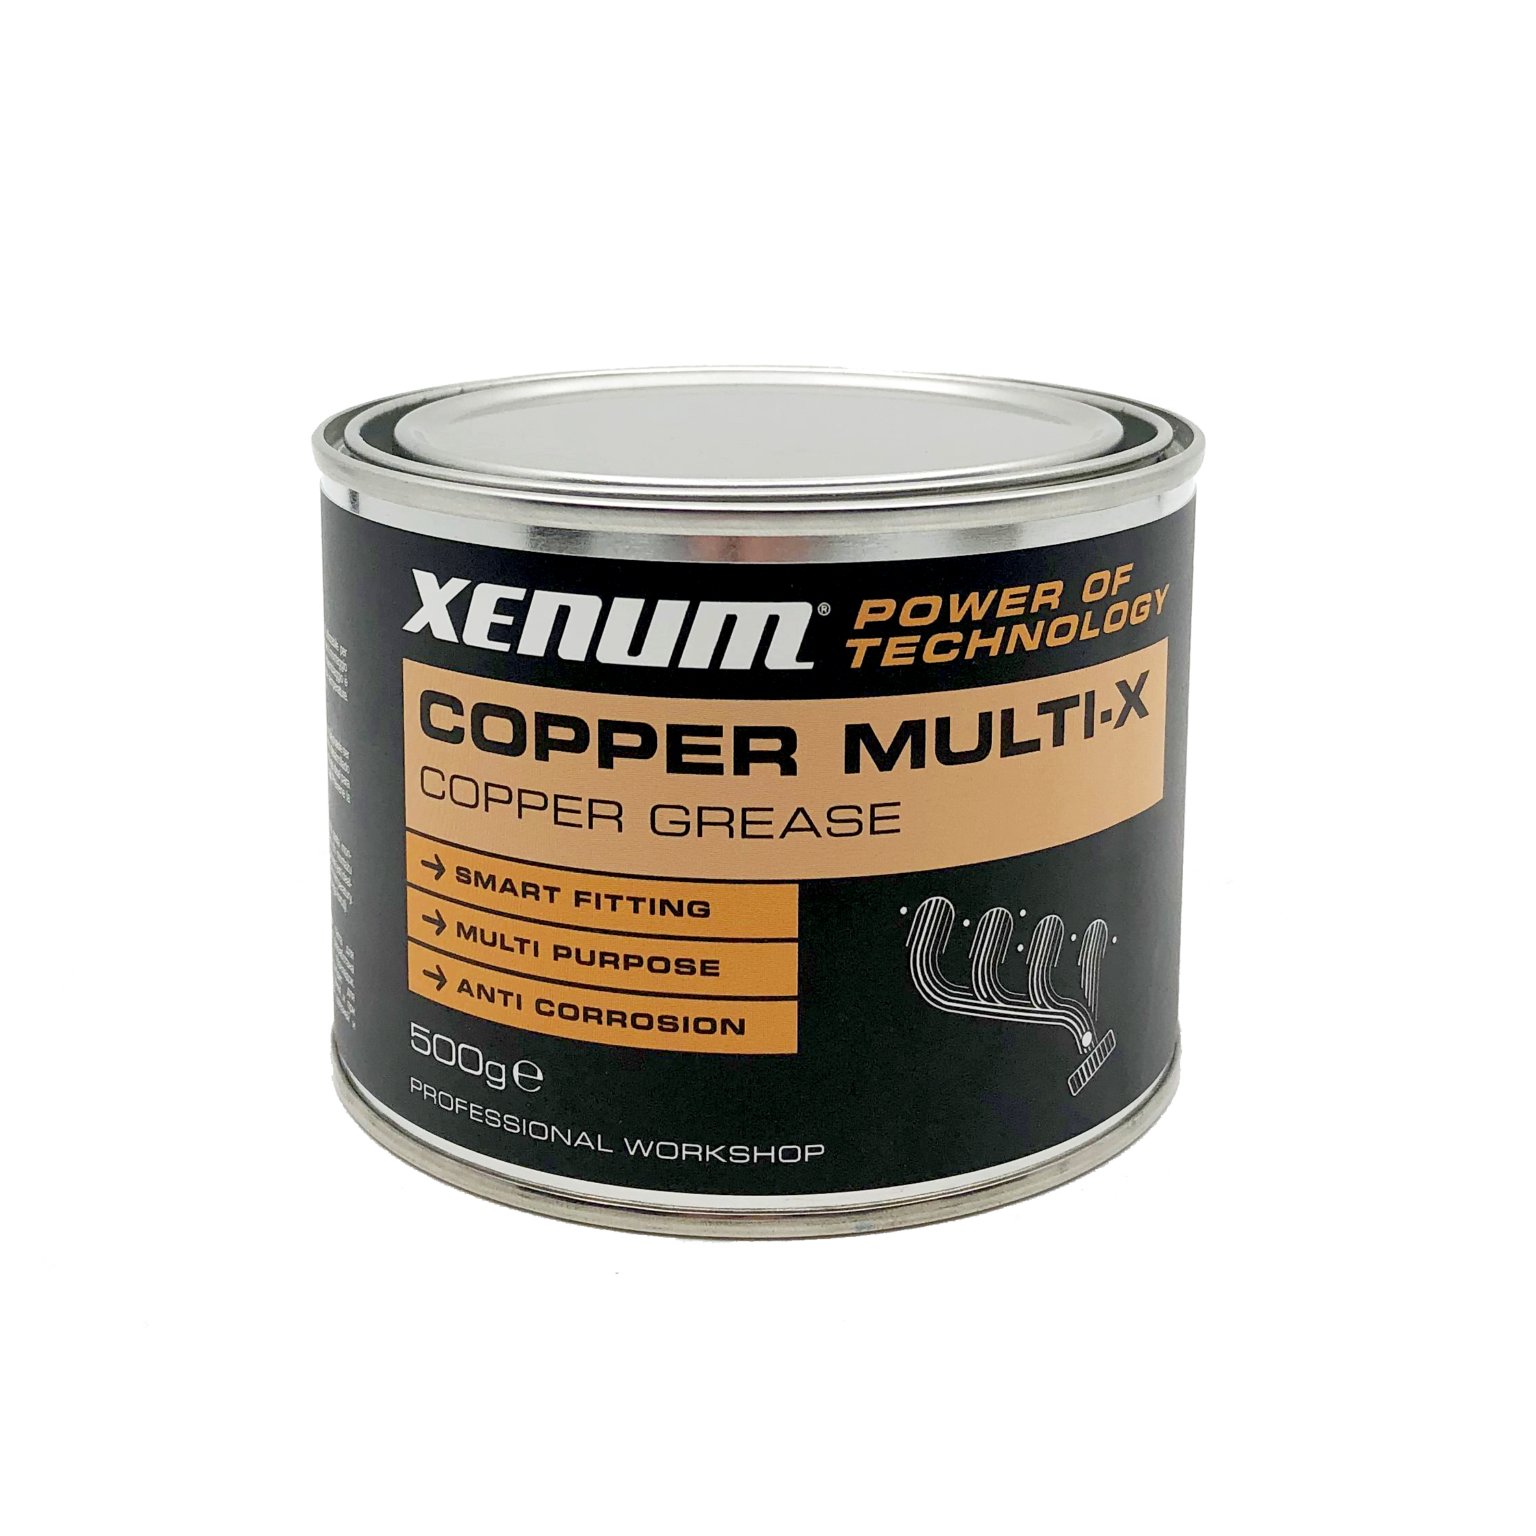 Copper Multi-X Graisse de cuivre - XENUM – Nounéna